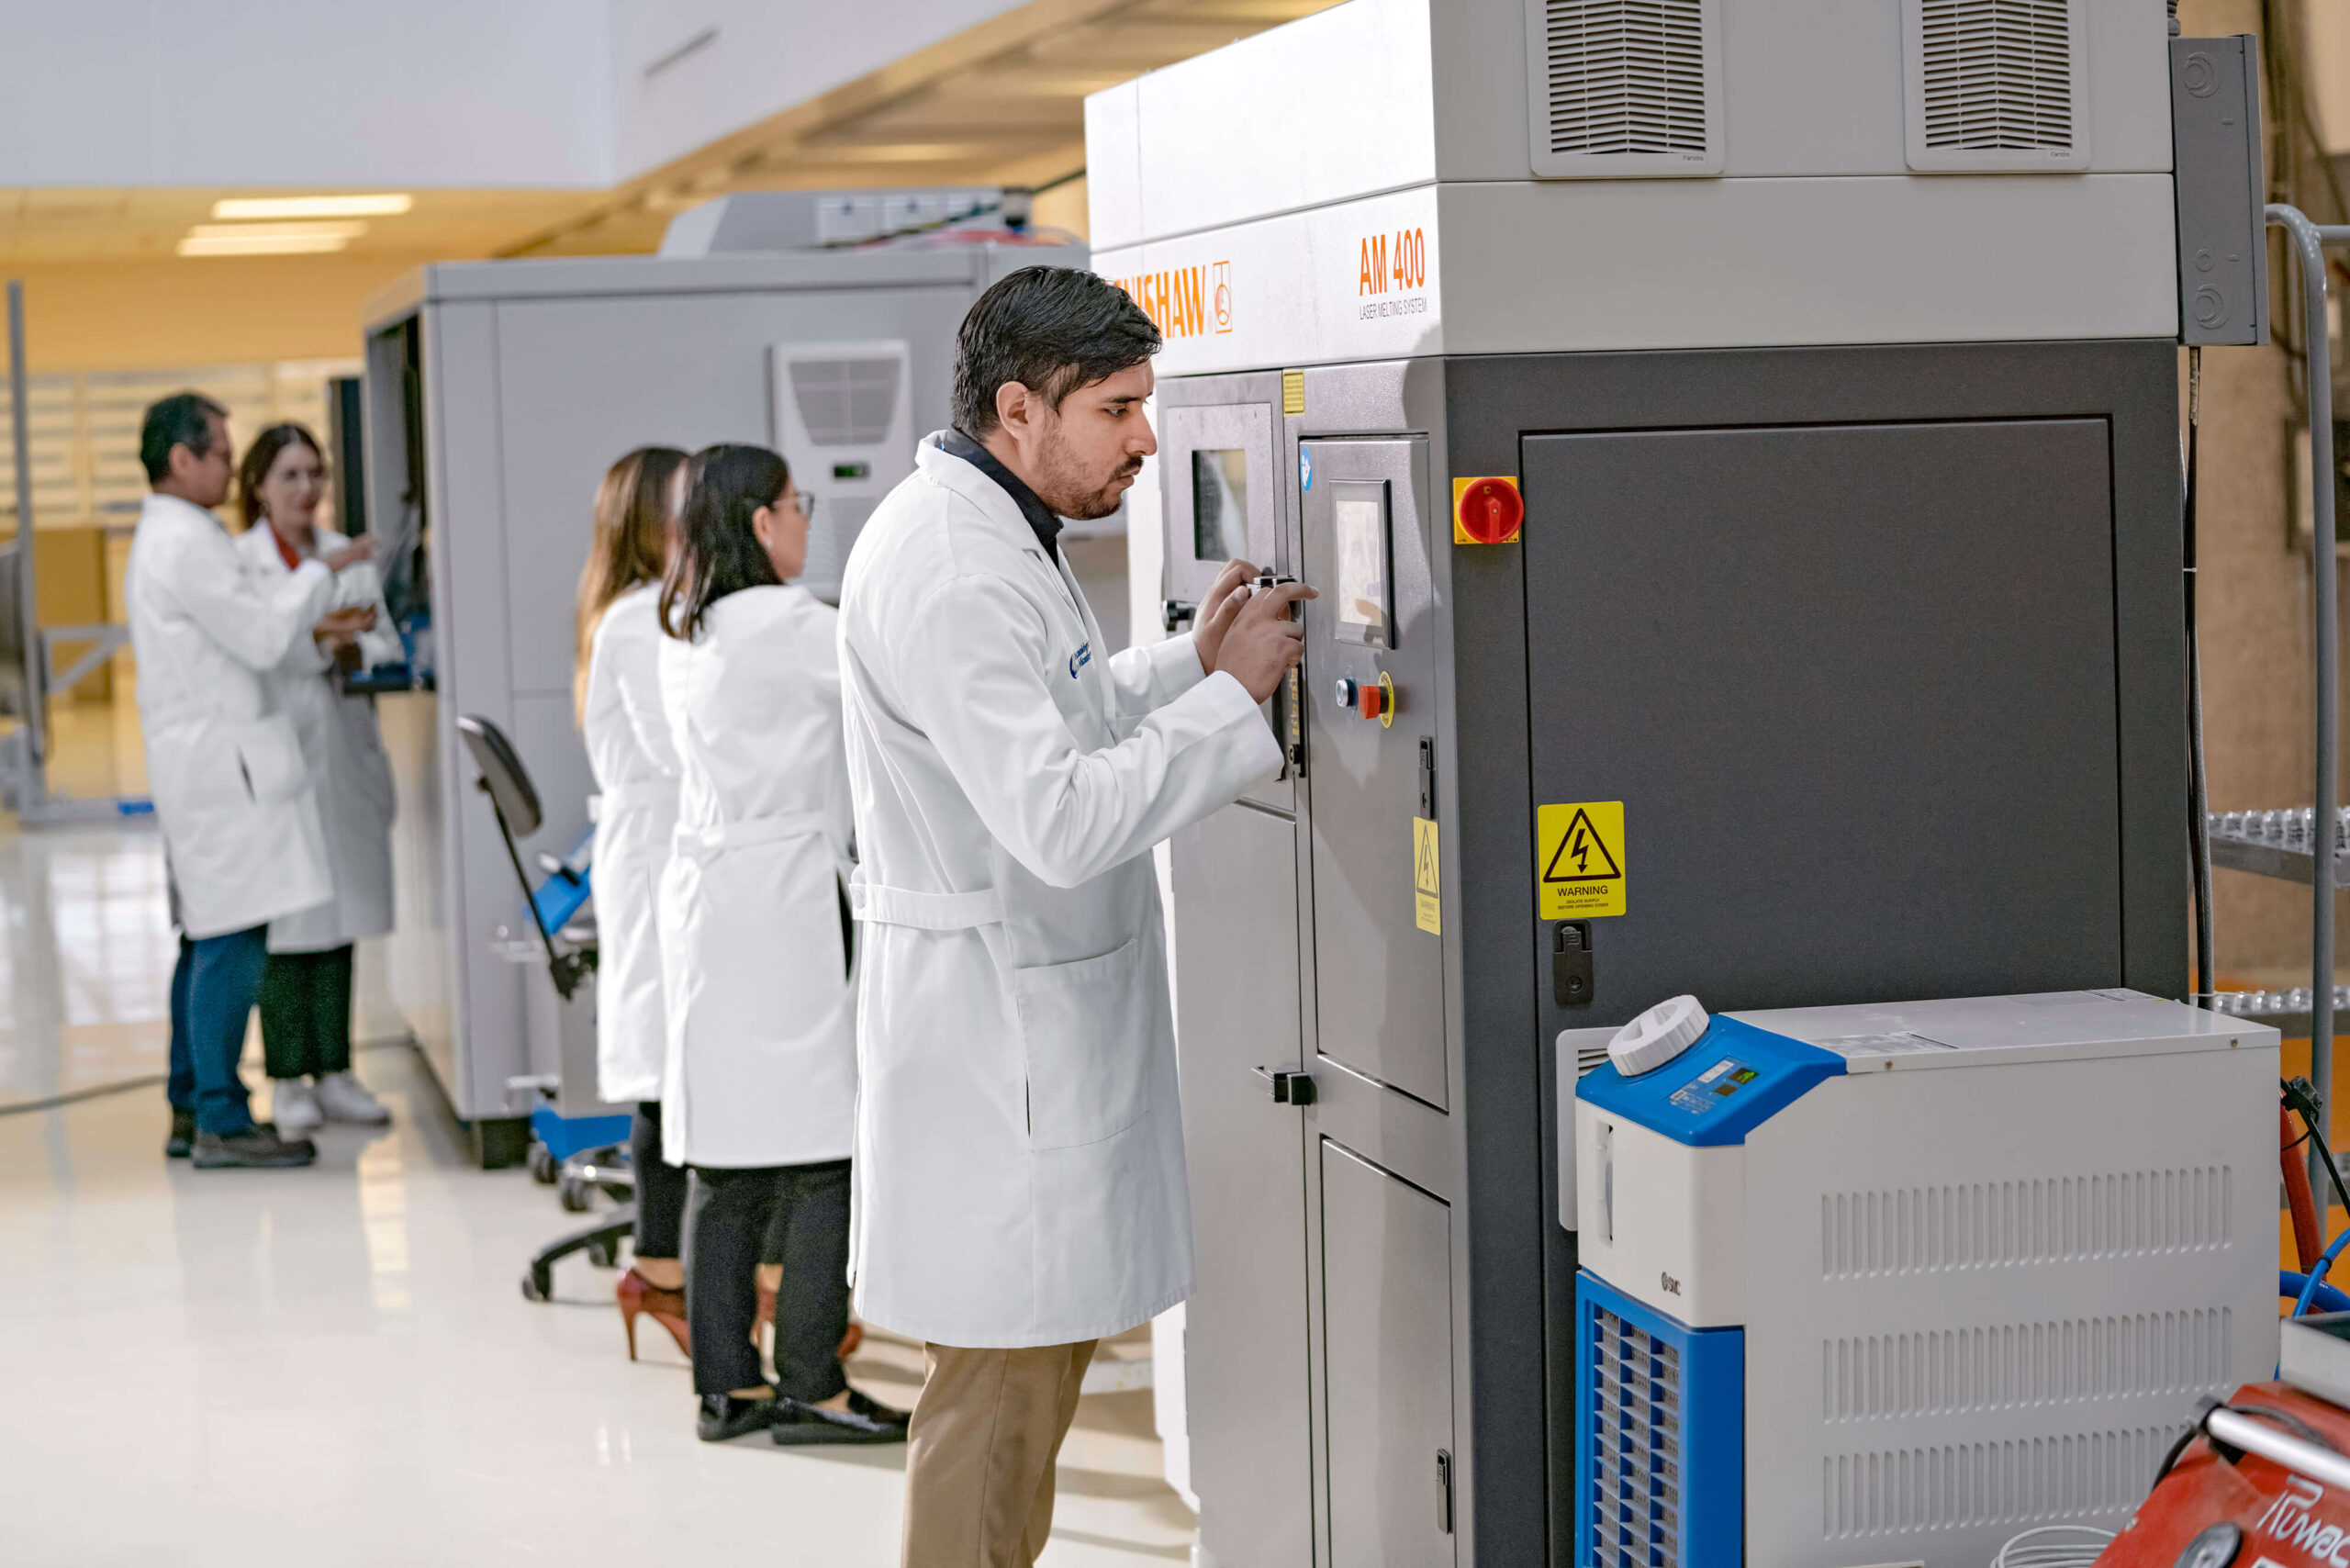 El Core Lab cuenta con equipo especializado de manufactura aditiva, como máquinas que permiten imprimir materiales reactivos, por ejemplo, el titanio y el aluminio. Algunos de ellos se adquieren de la compañía GE Additive, una rama de la empresa General Electric dedicada a esta tecnología.